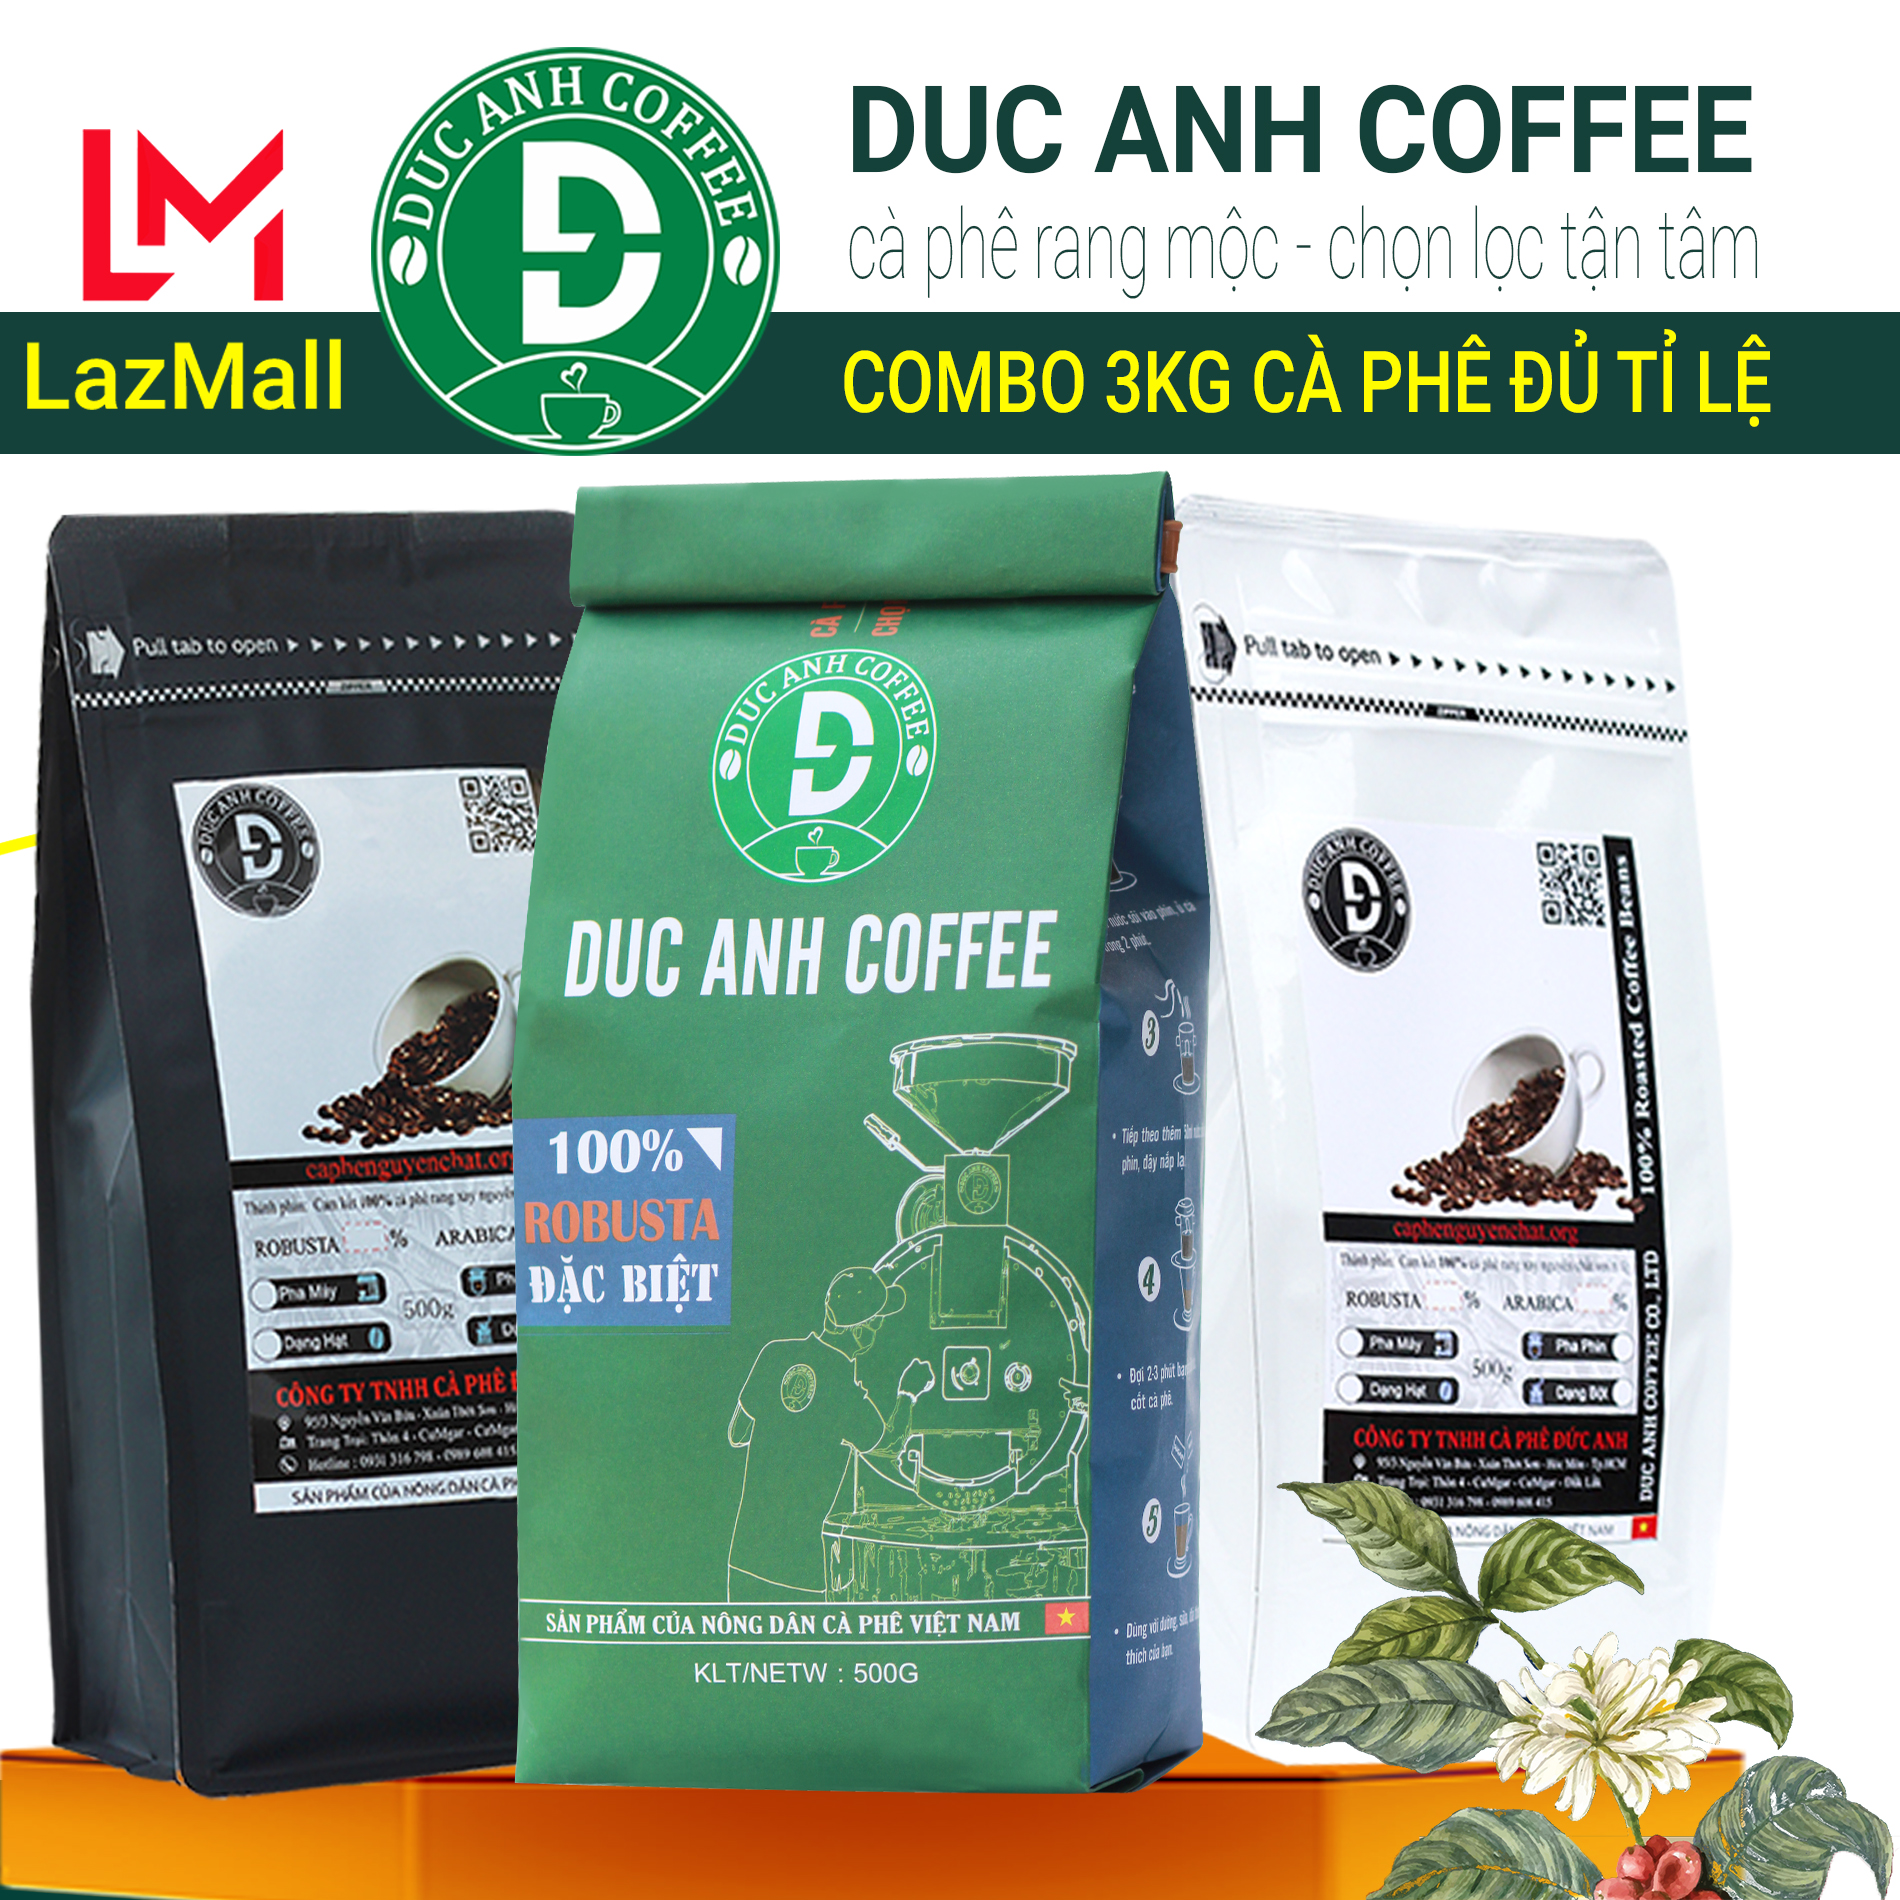 3kg cà phê rang mộc DUC ANH COFFEE tất cả các tùy chọn robusta và arabica